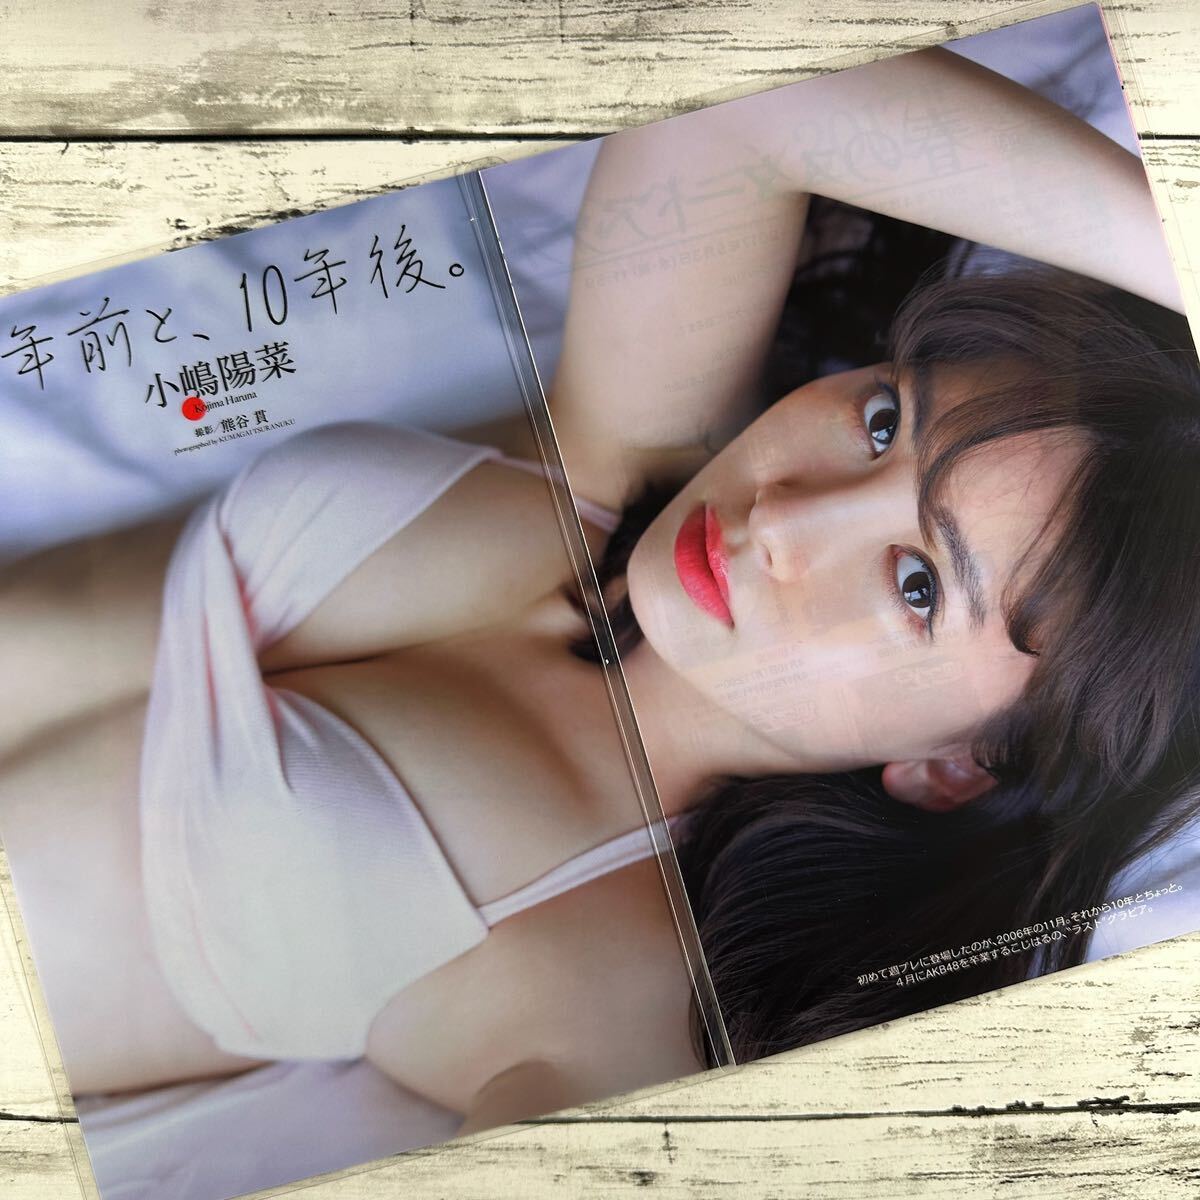 [ высокое качество ламинирование отделка ][ Kojima Haruna AKB48 ] Play Boy 2017 год 16 номер журнал вырезки 7 страница купальный костюм bikini model актер женщина super 